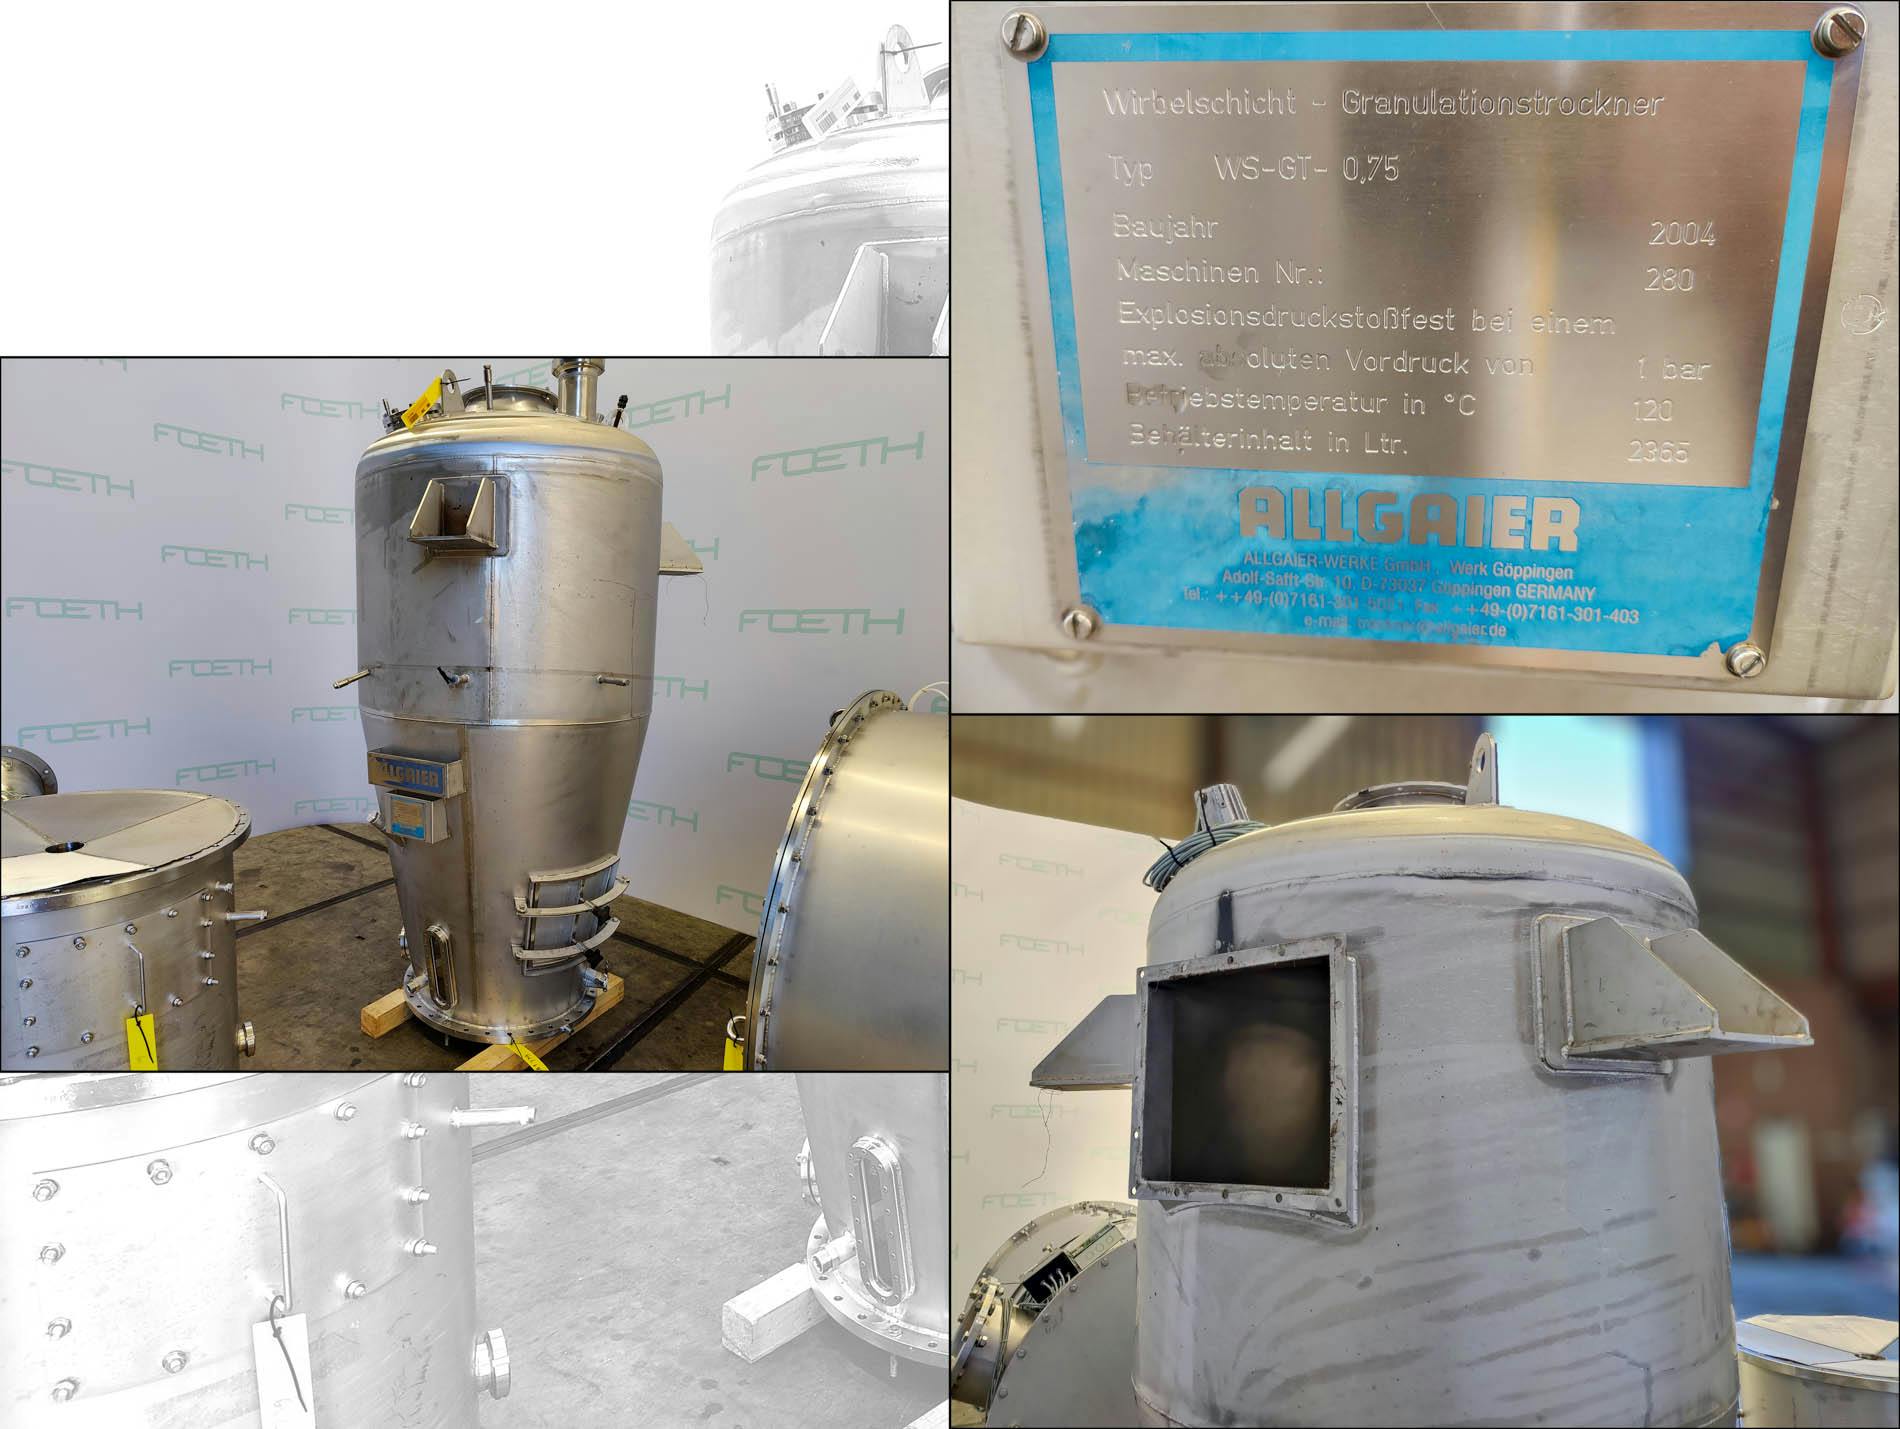 Allgaier Fluidized Bed Spray Granulators WS-GT-0,75 - Suszarka fluidyzacyjna - suszenie ciągłe - image 5